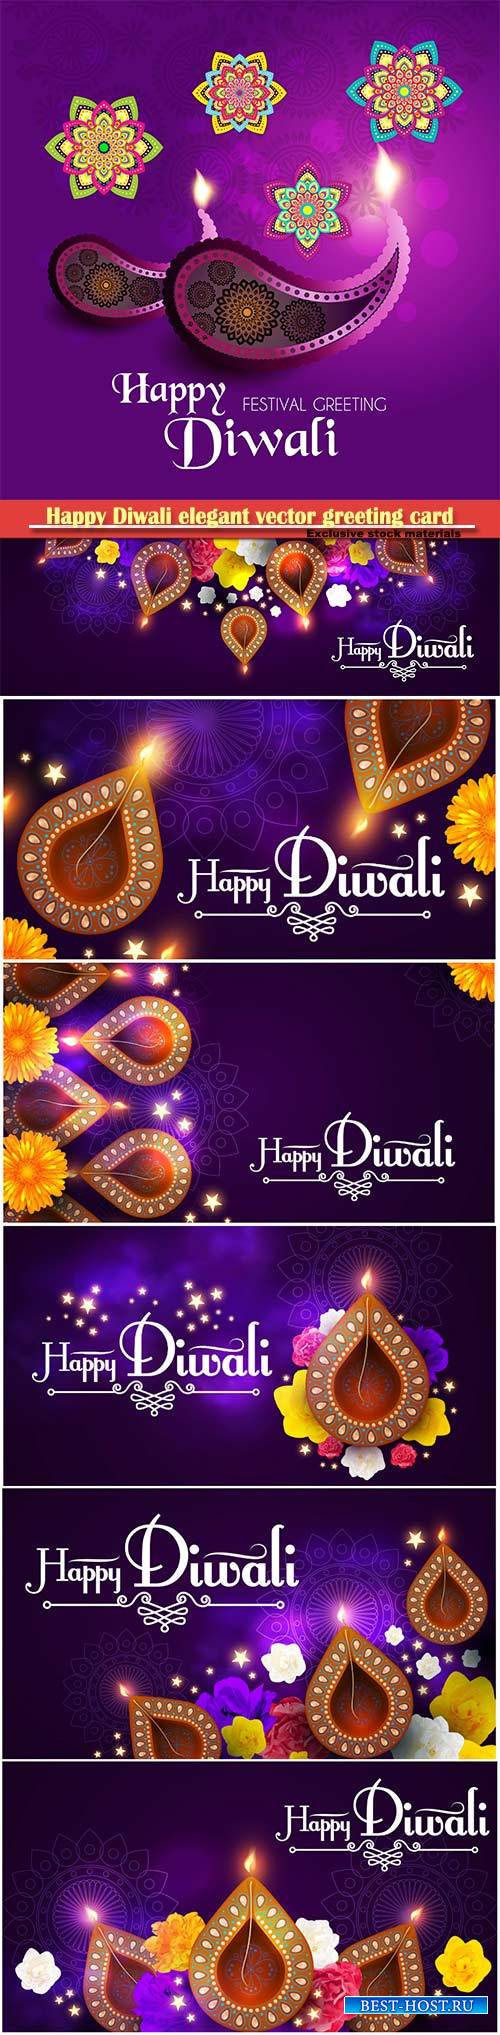 Happy Diwali elegant vector greeting card design